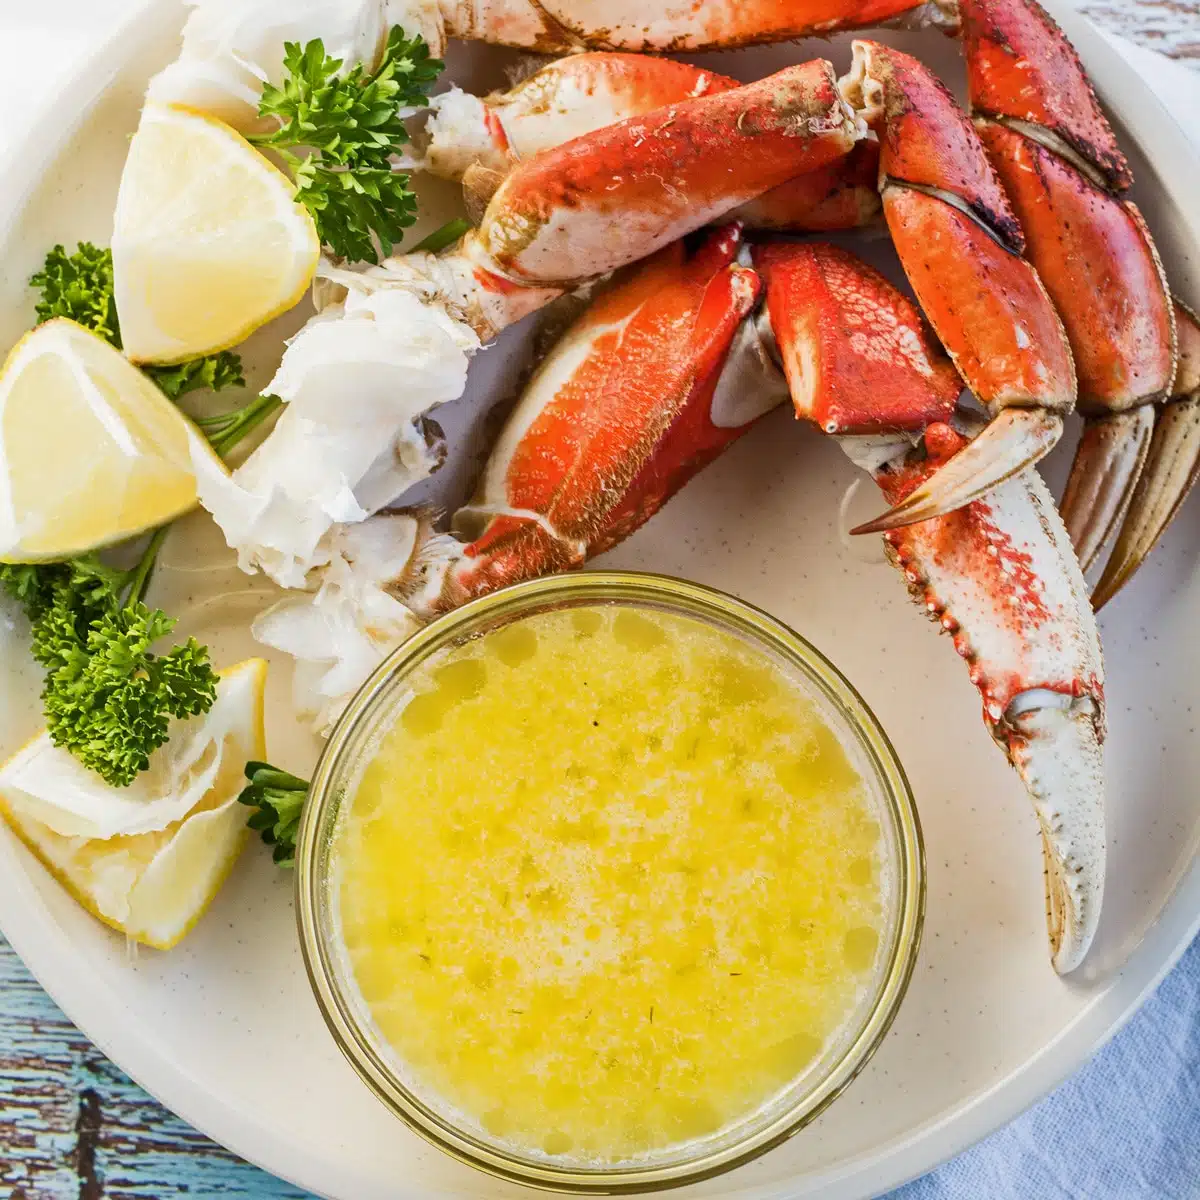 Aquare afbeelding van krabbenpoten op een bord met boter.